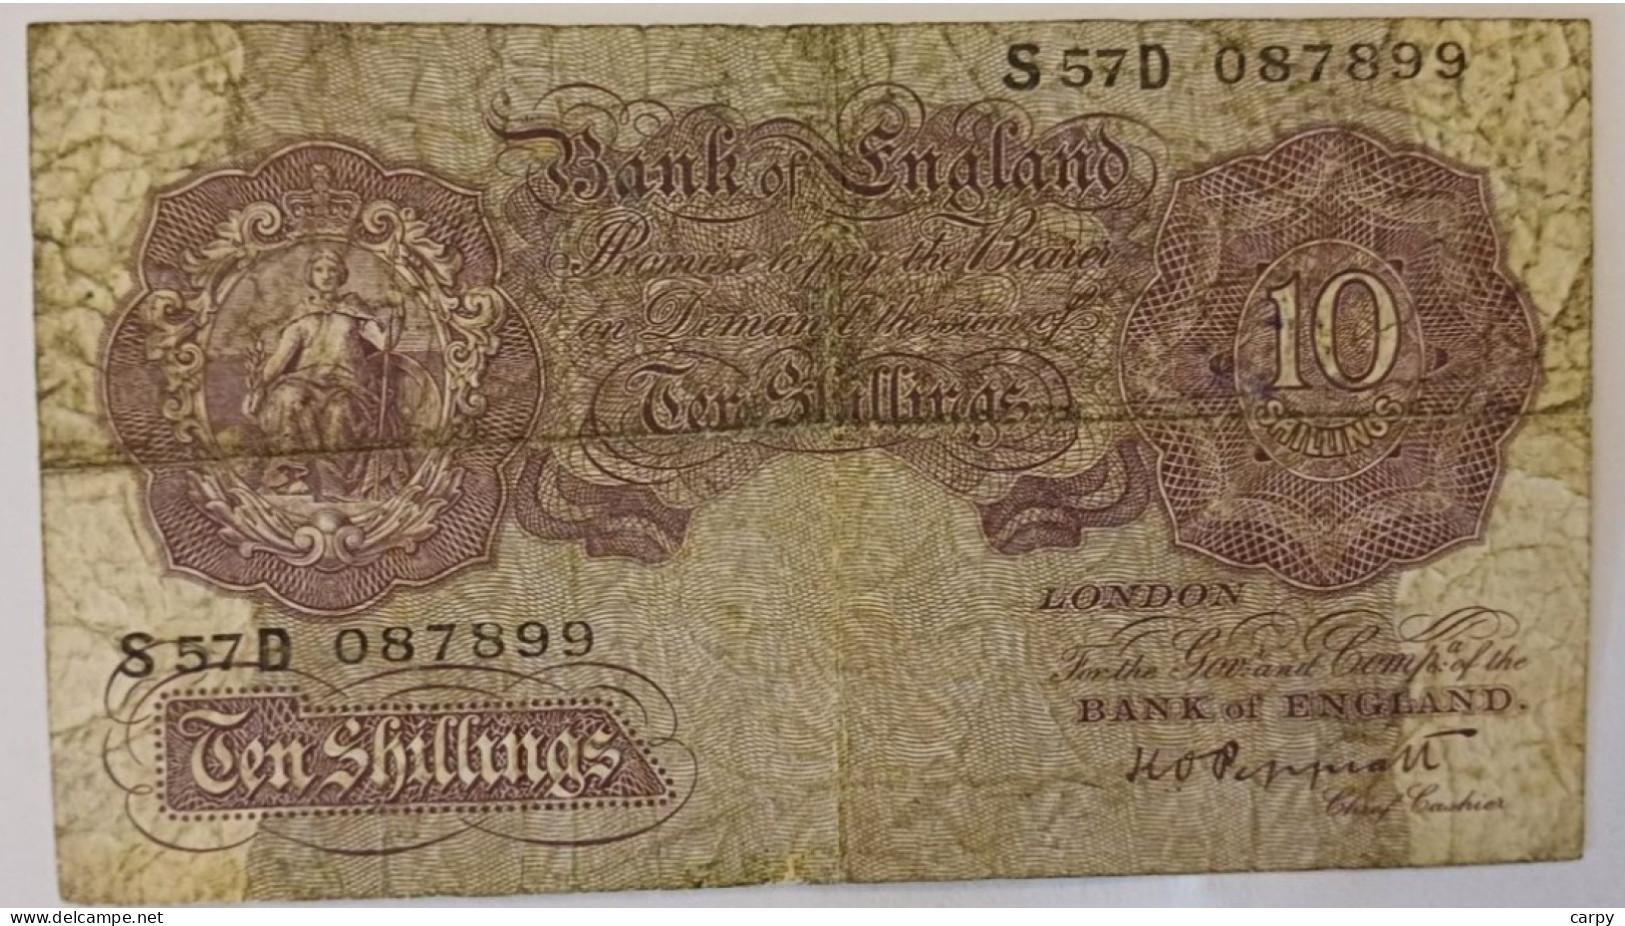 GREAT BRITAIN 10 Shilling 1940 / Signature: K.O. Peppiatt - 10 Schilling